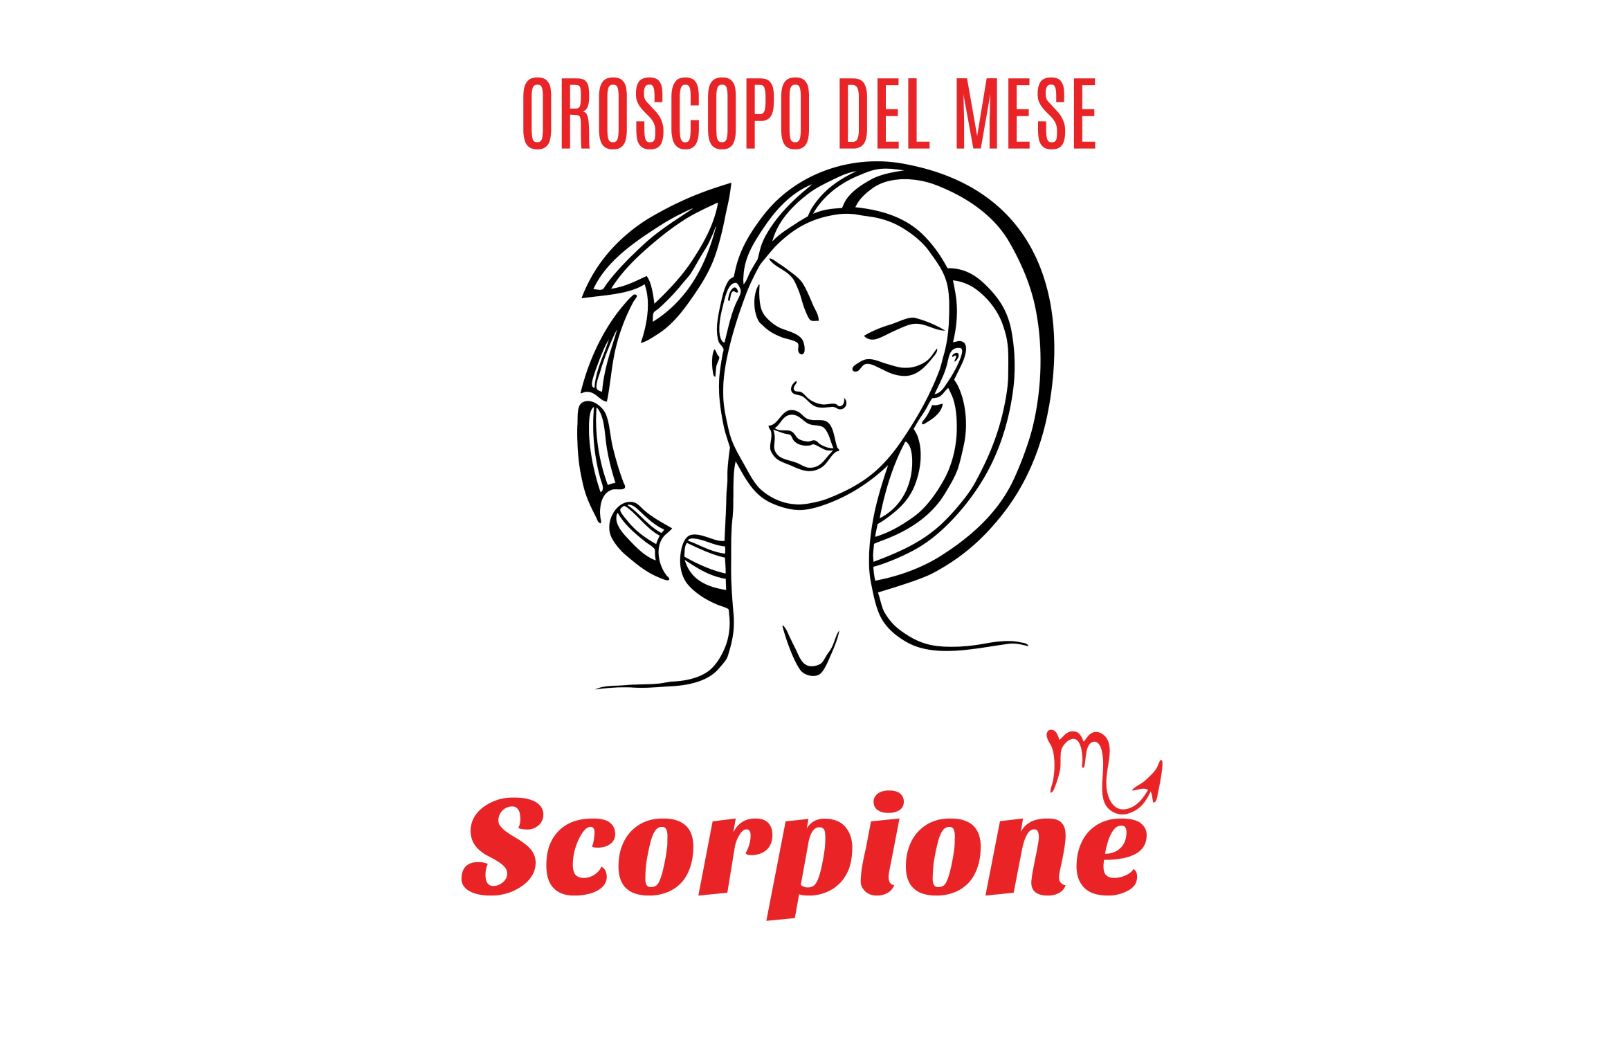 Oroscopo del mese: Scorpione - dicembre 2018